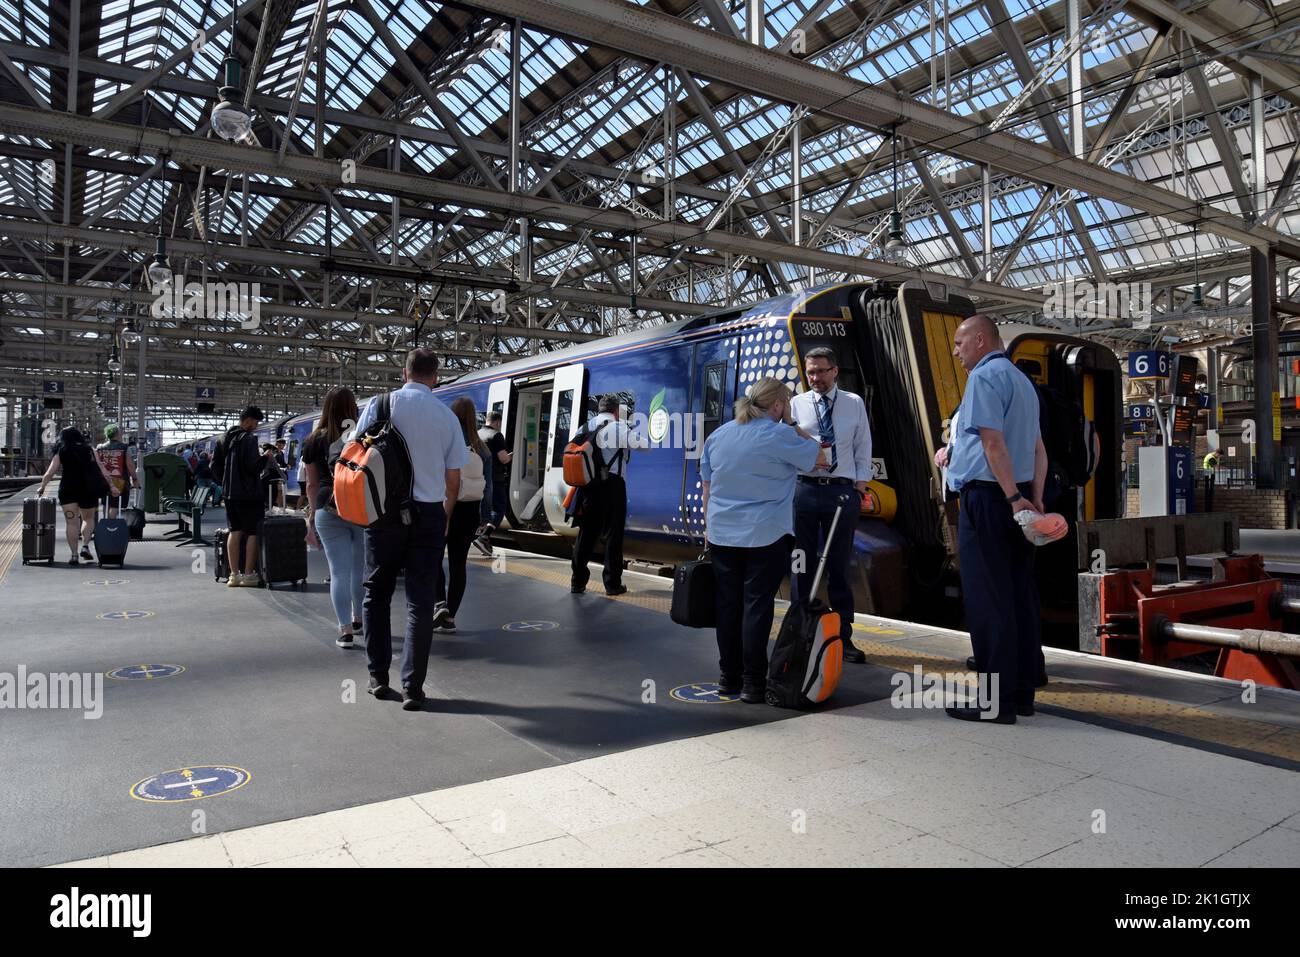 Traincrew charlando mientras los pasajeros suben a un tren eléctrico Desiro Clase 380 en la estación central de Glasgow, Escocia, Reino Unido Foto de stock